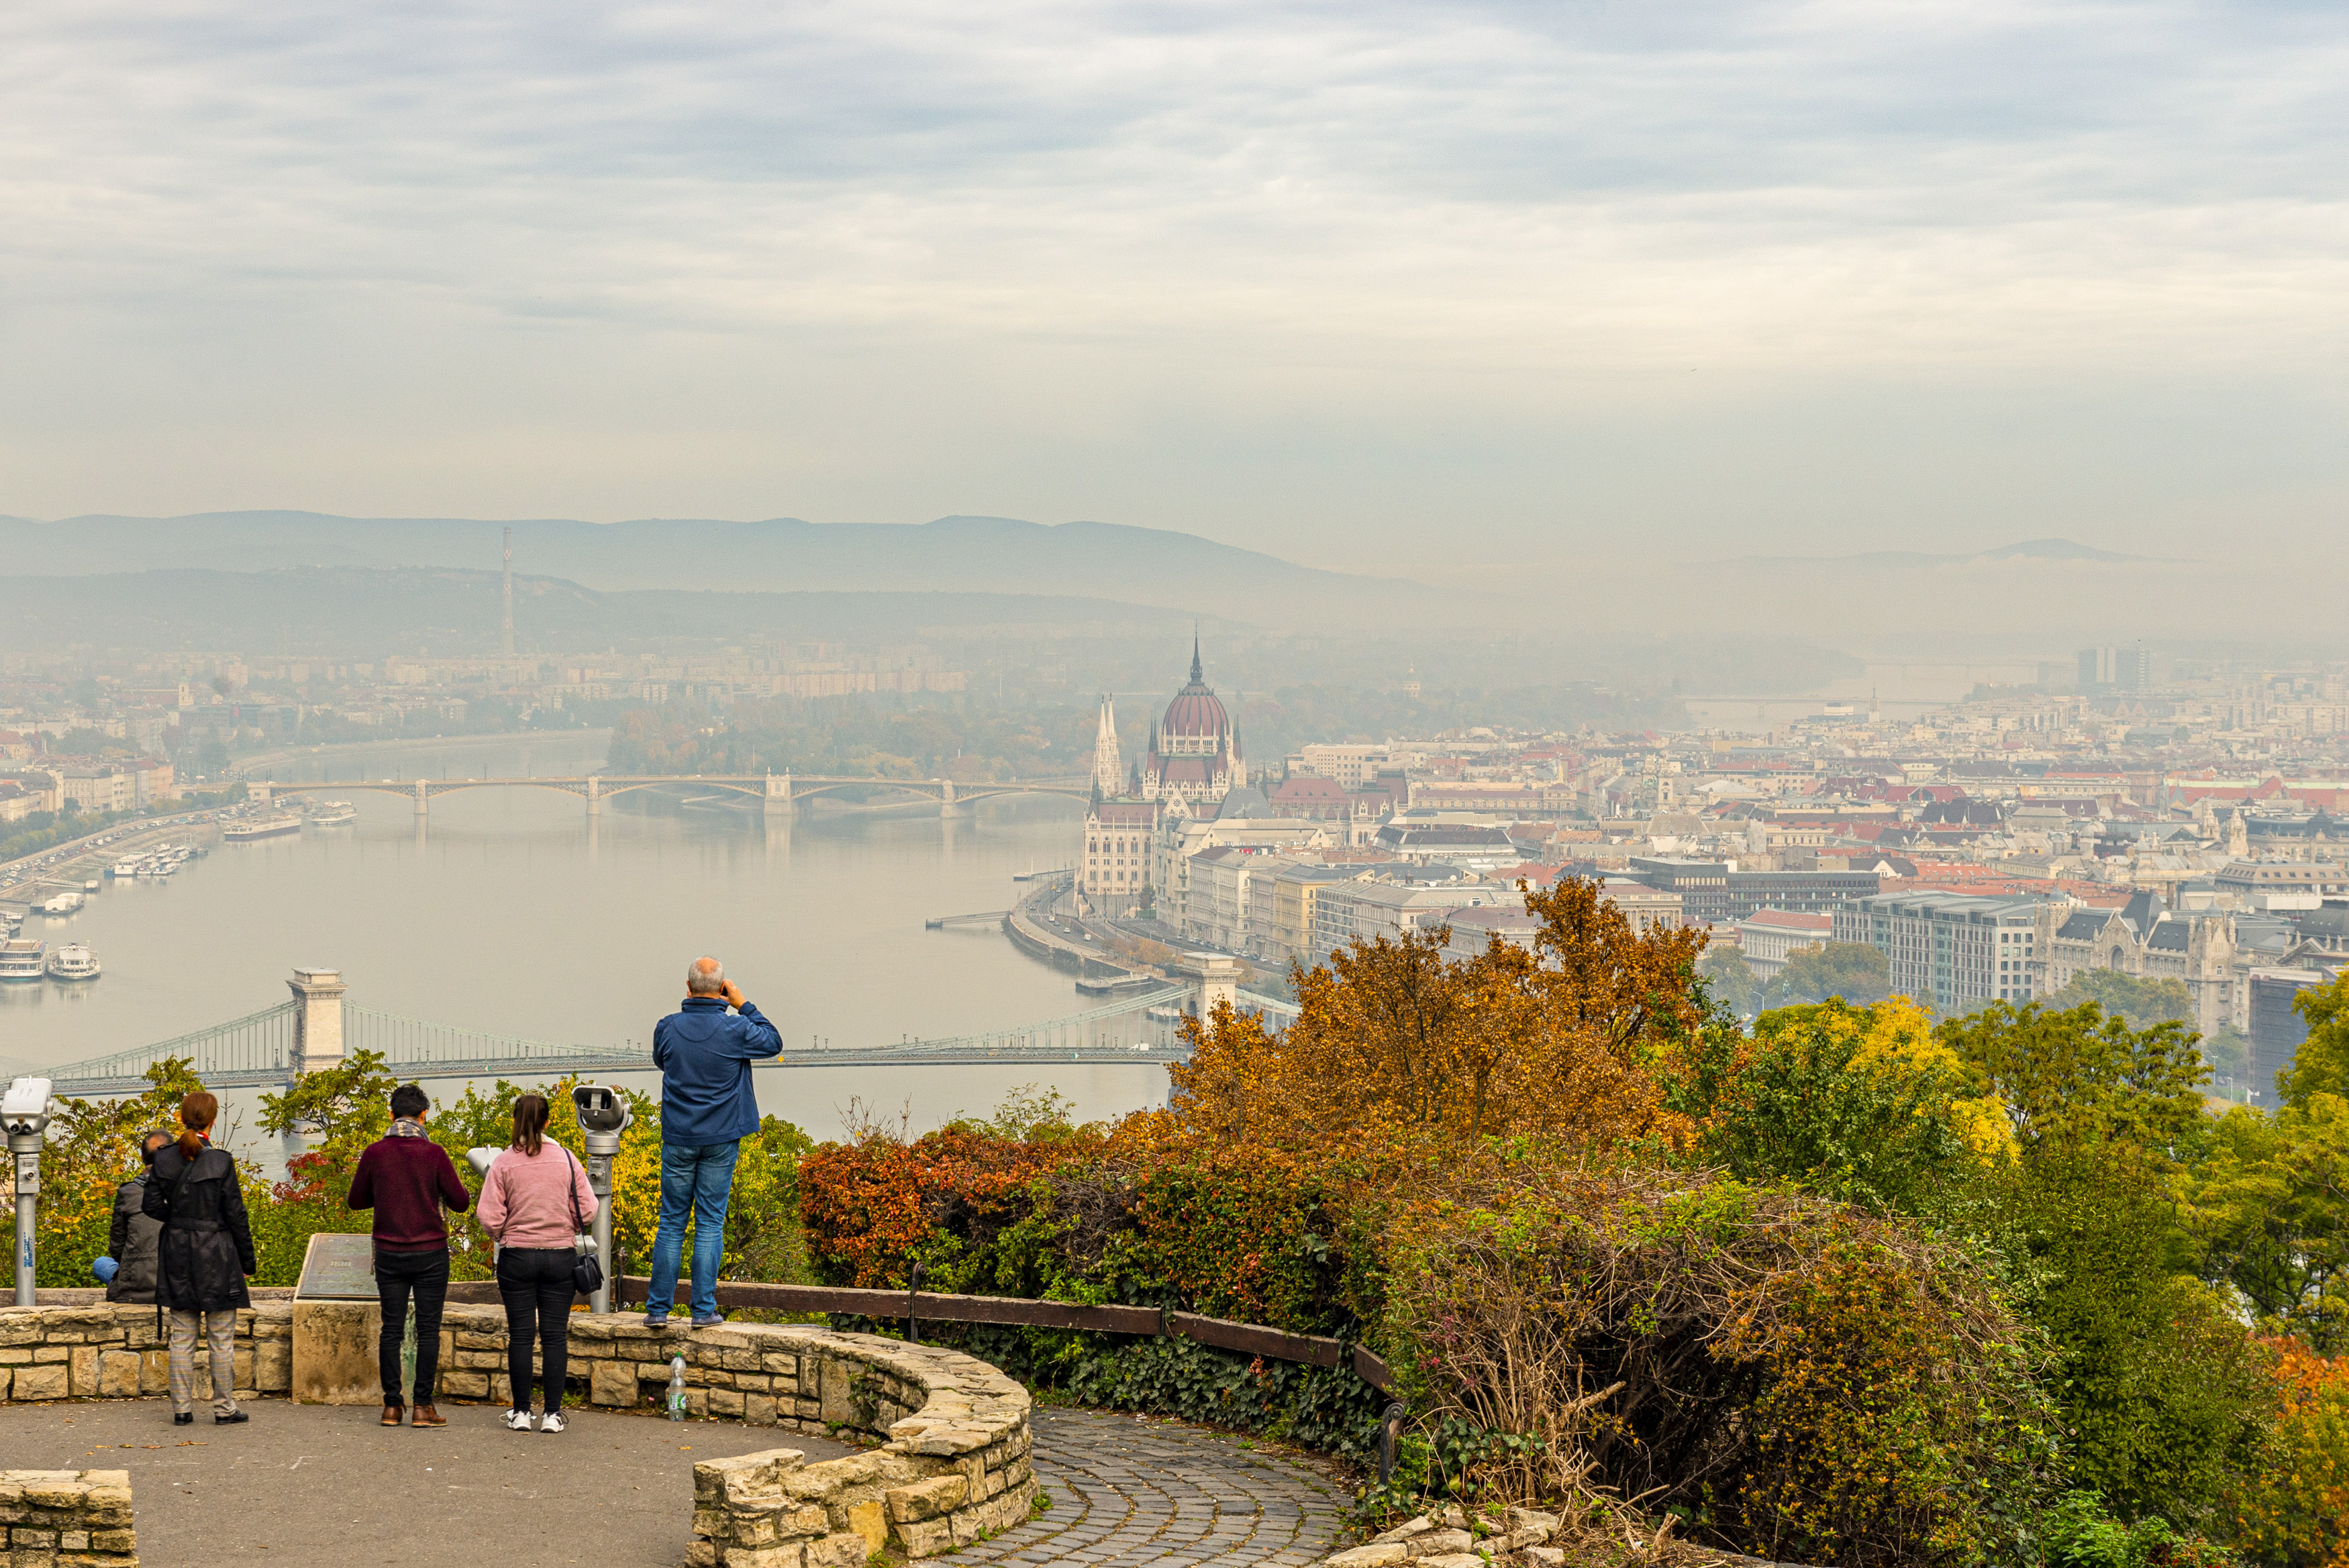 Ilyen az ősz Budapesten – Heti képgaléria (29. rész)